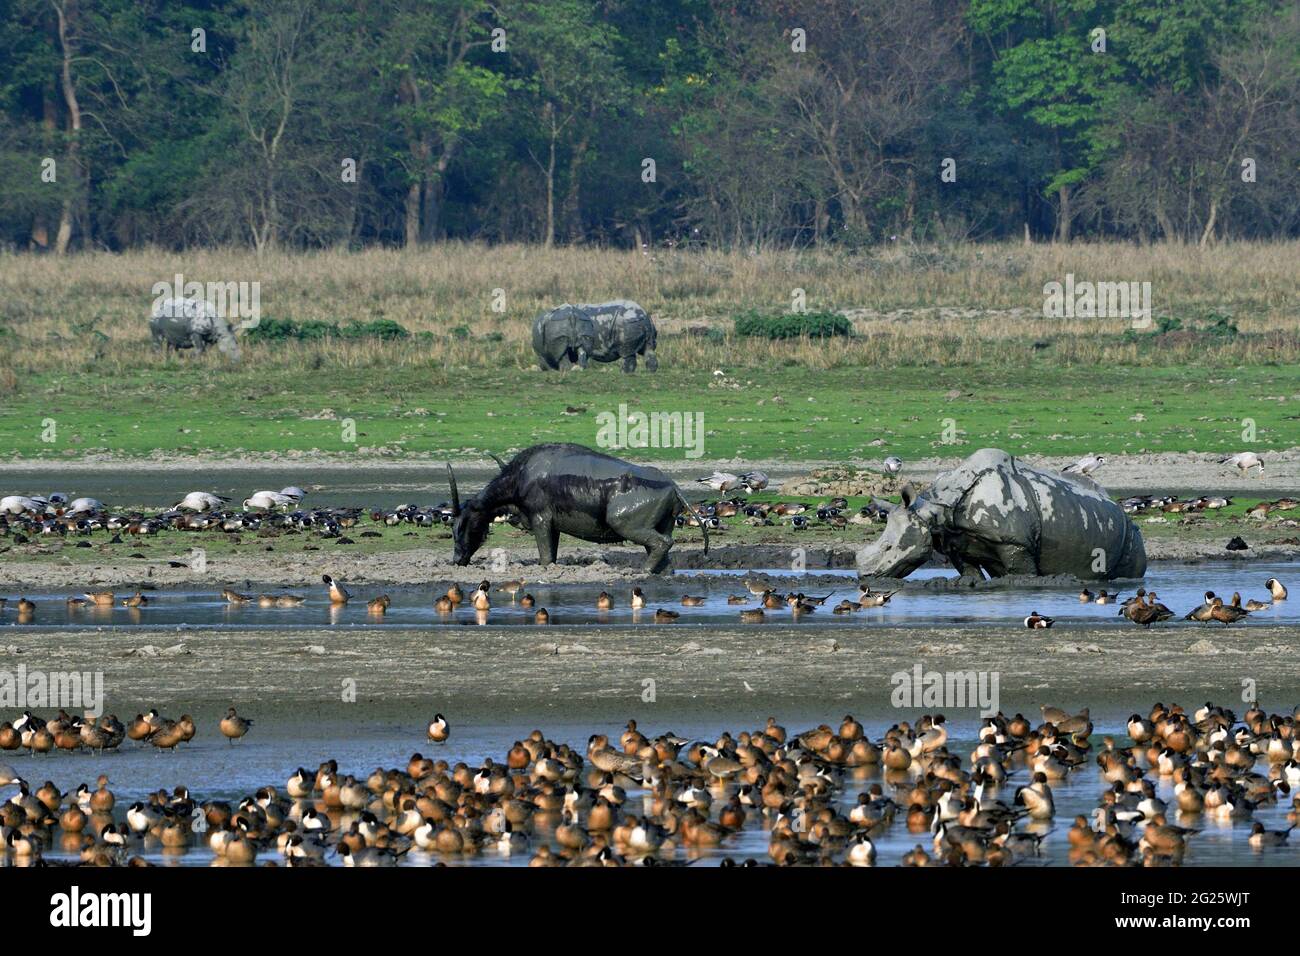 Vue sur le sanctuaire de la faune de Pobitora avec le Buffalo aquatique asiatique, le rhinocéros de Greater One Horned et différentes espèces d'oiseaux migrateurs Banque D'Images